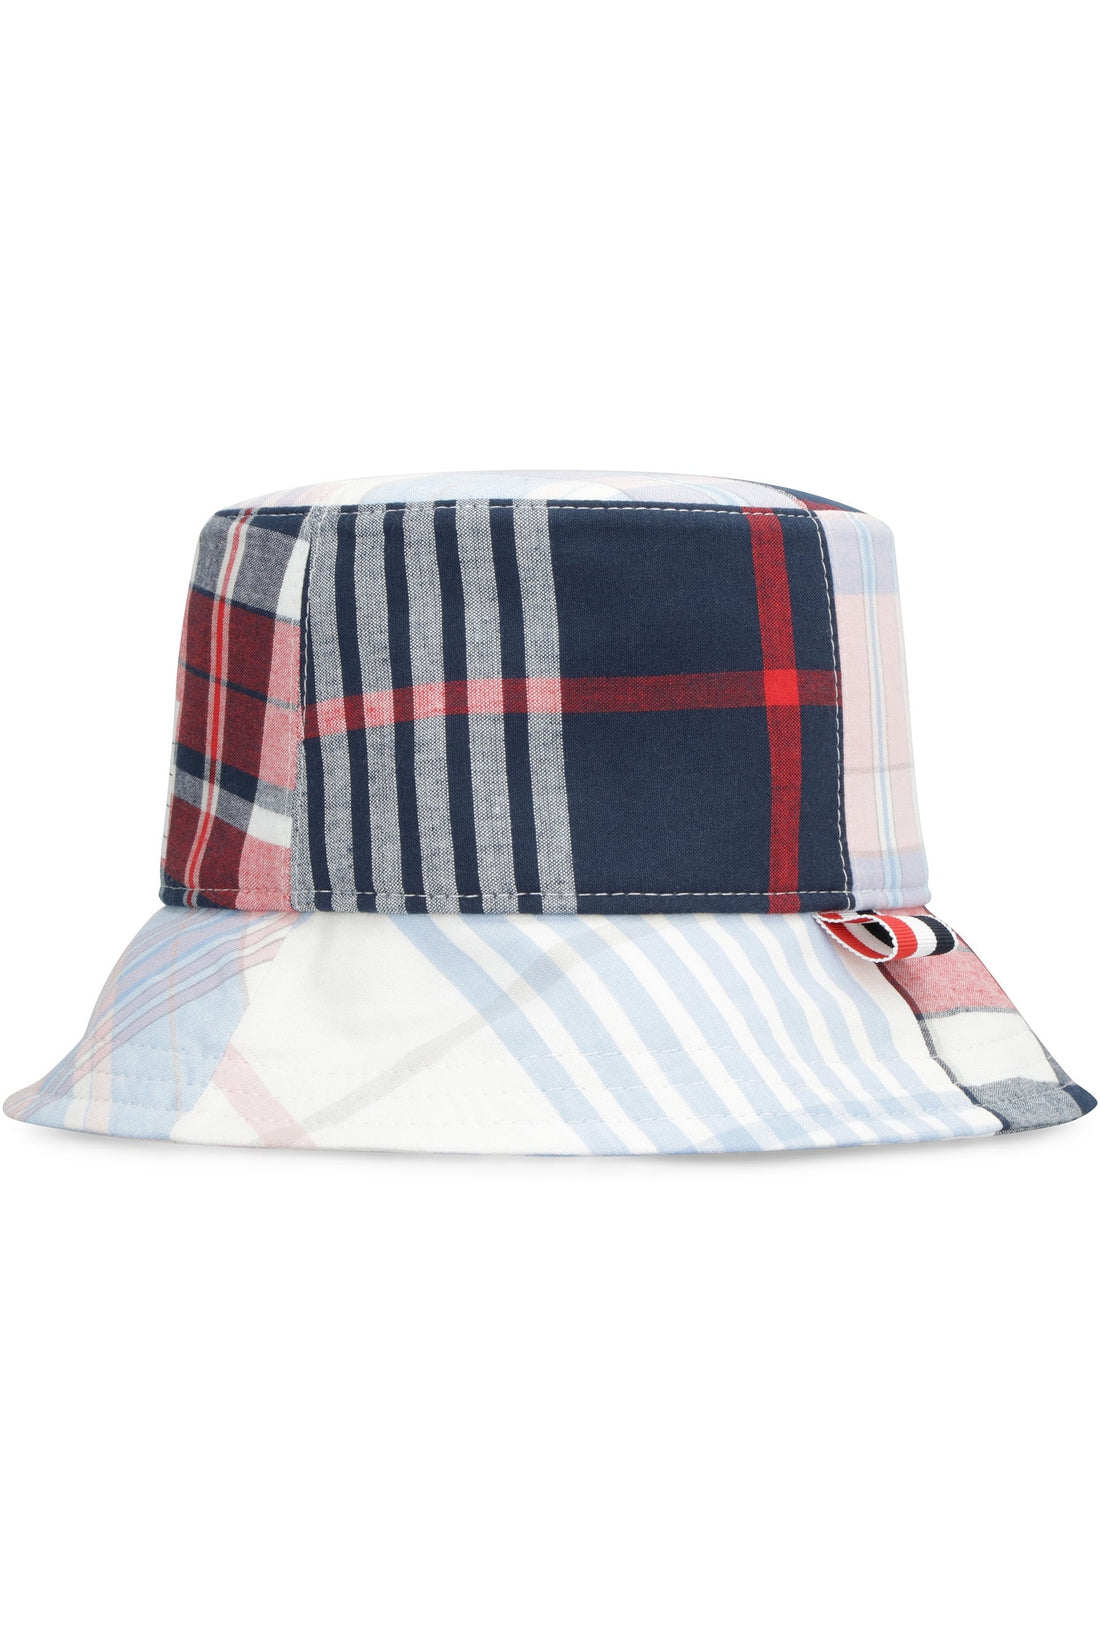 Thom Browne-OUTLET-SALE-Cotton hat-ARCHIVIST